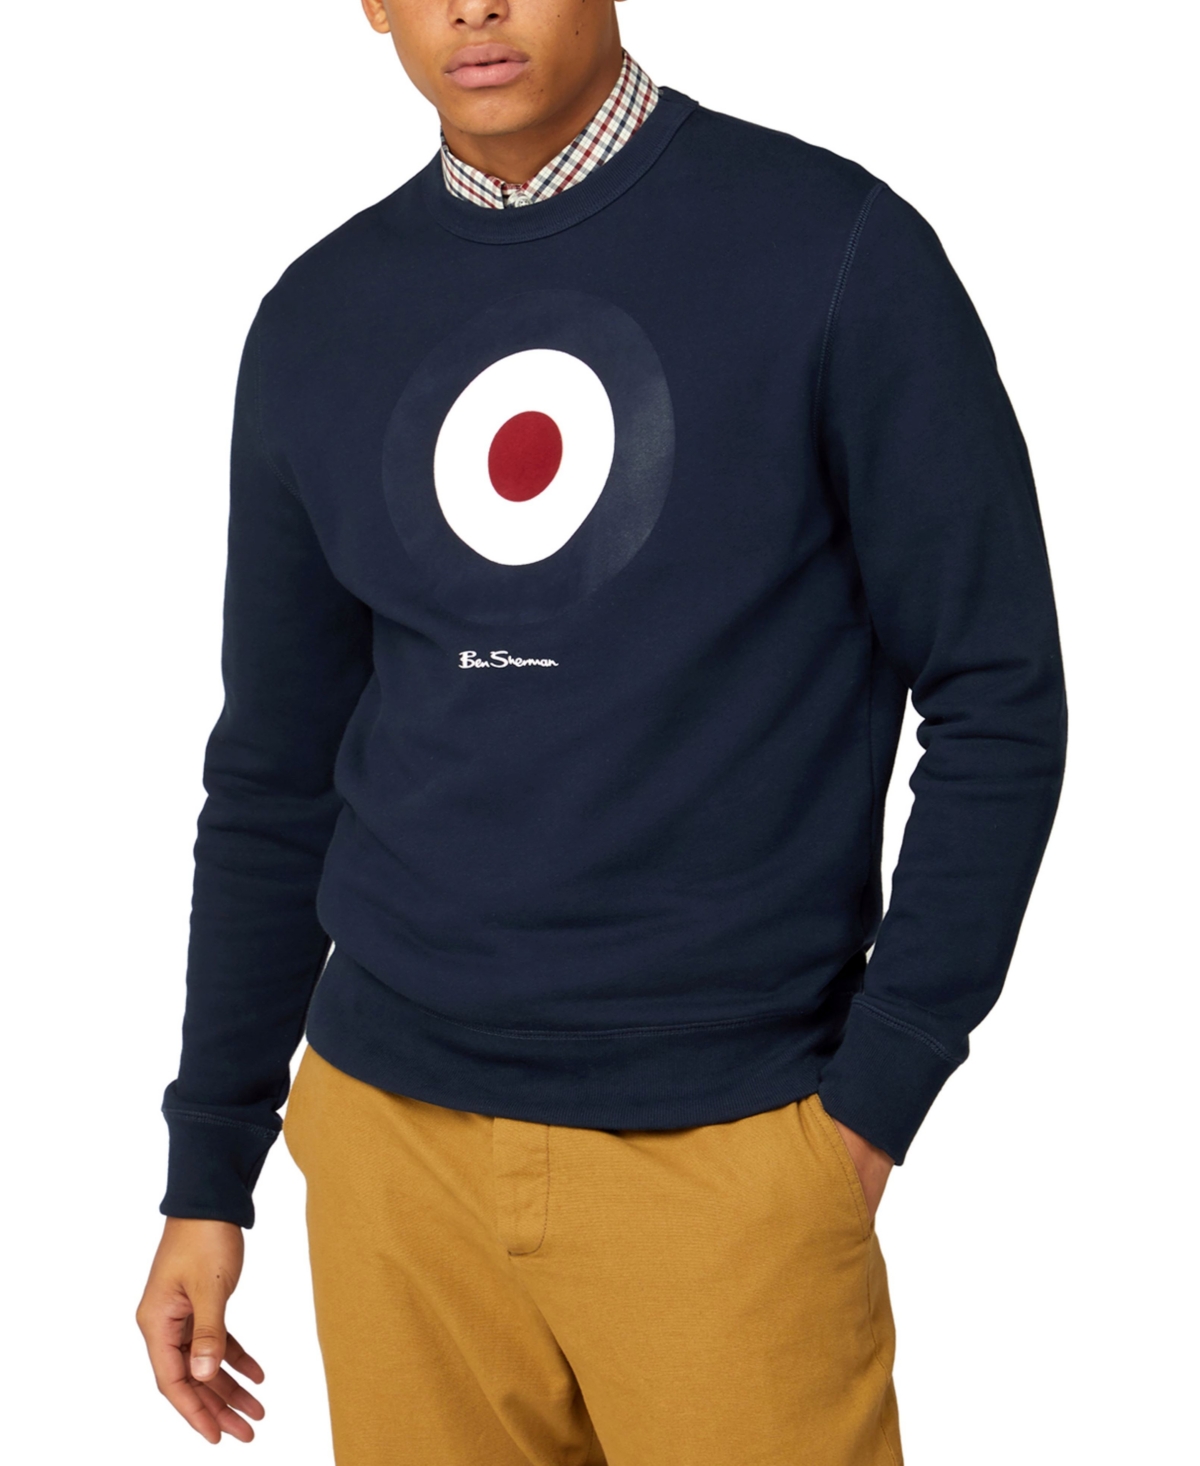 Men's Signature Target Graphic Crewneck Sweatshirt - Dark Navy